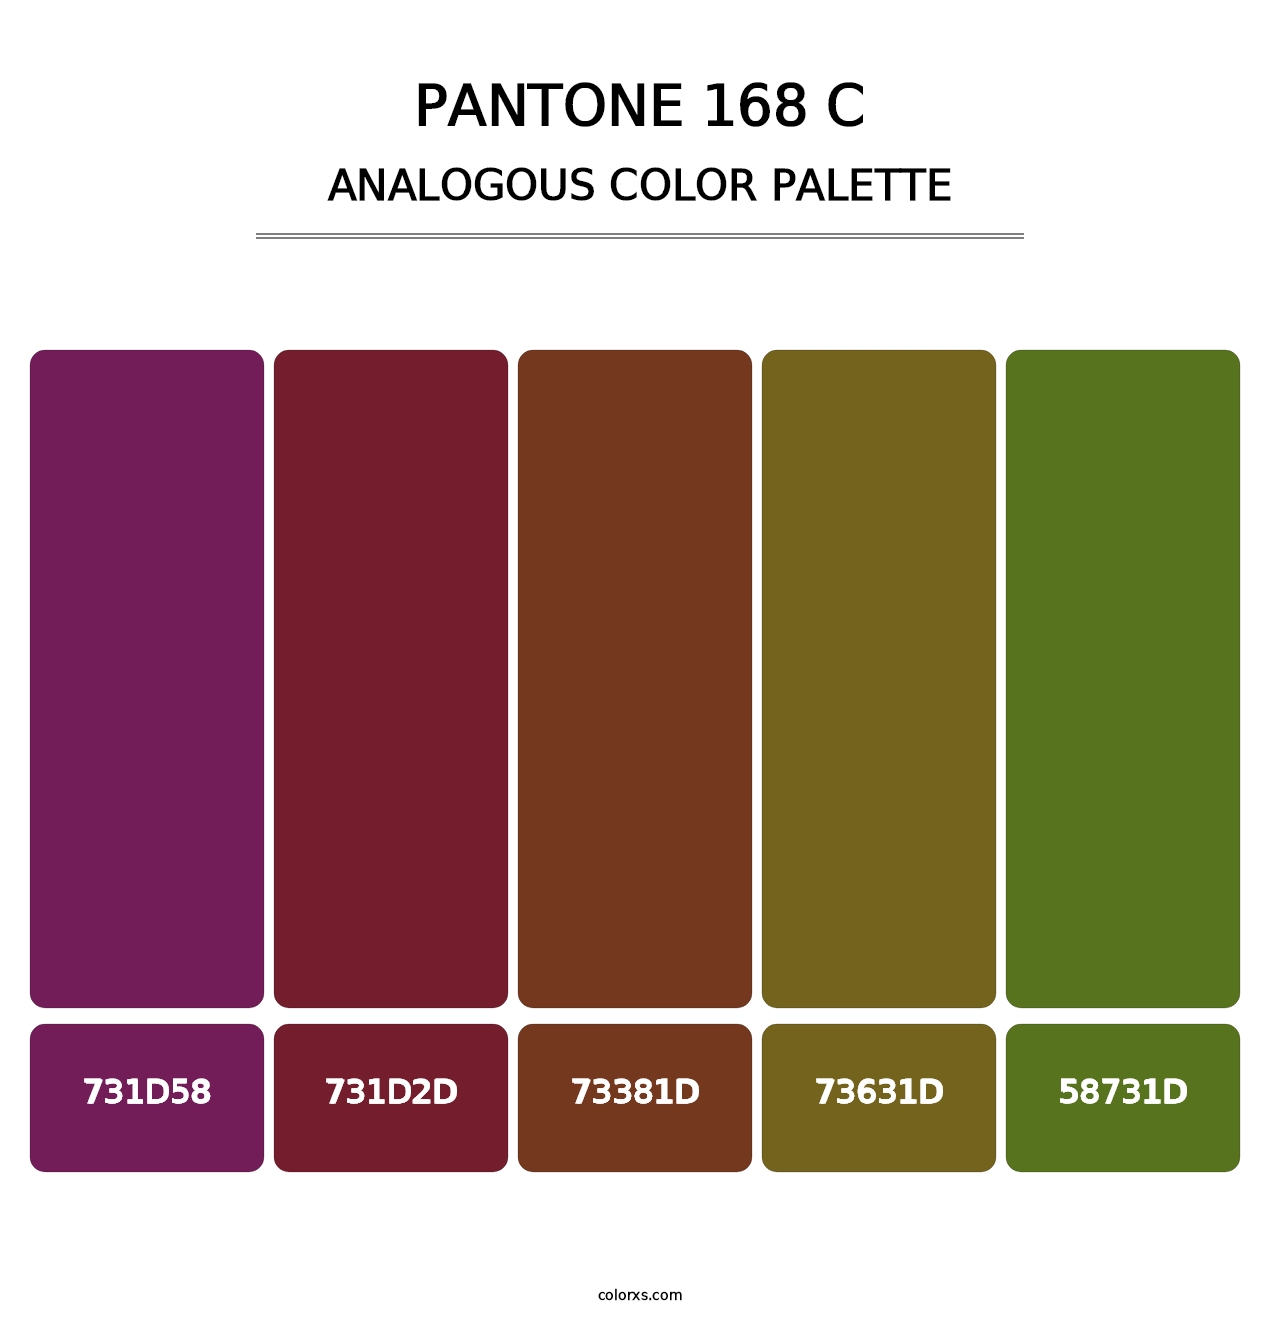 PANTONE 168 C - Analogous Color Palette